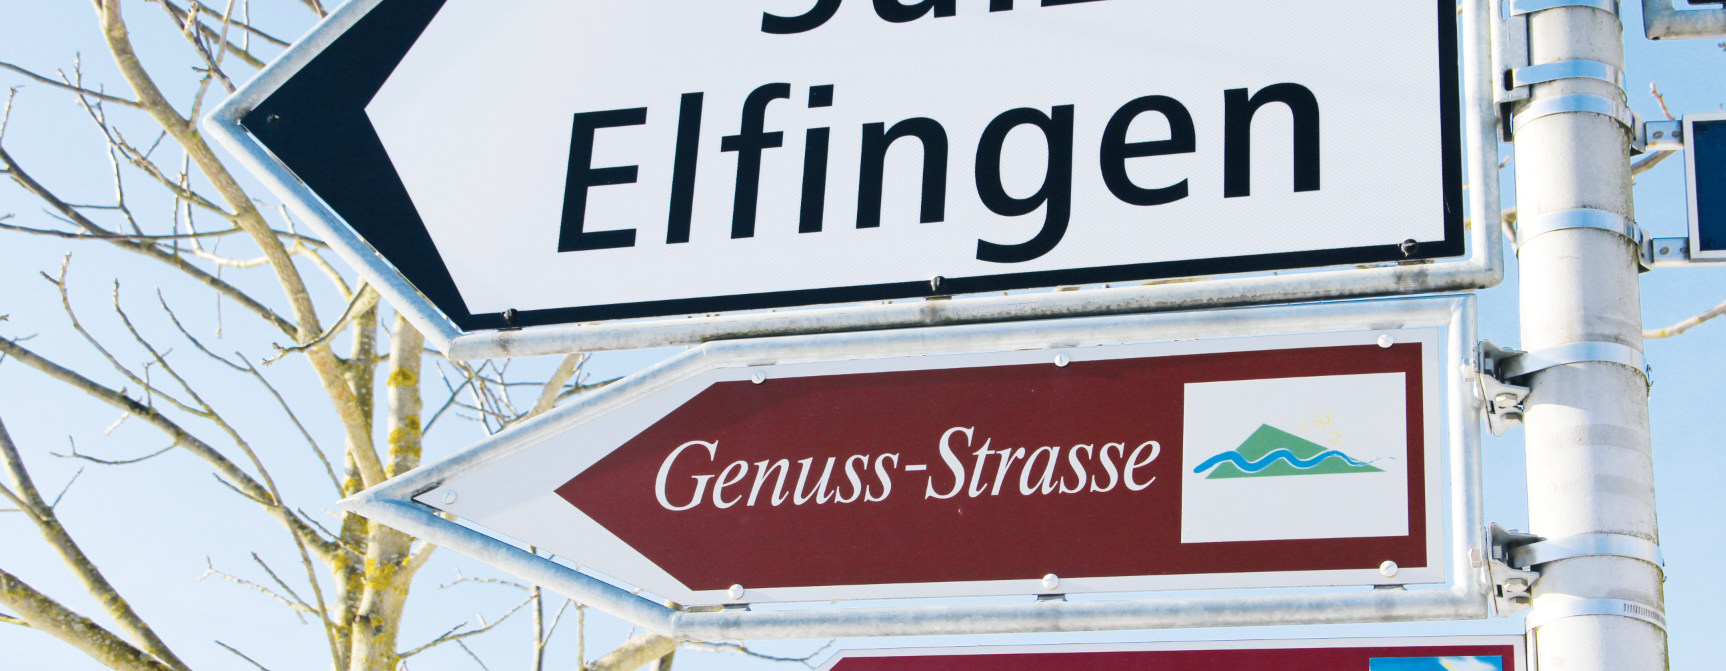 GEnuss-Strasse